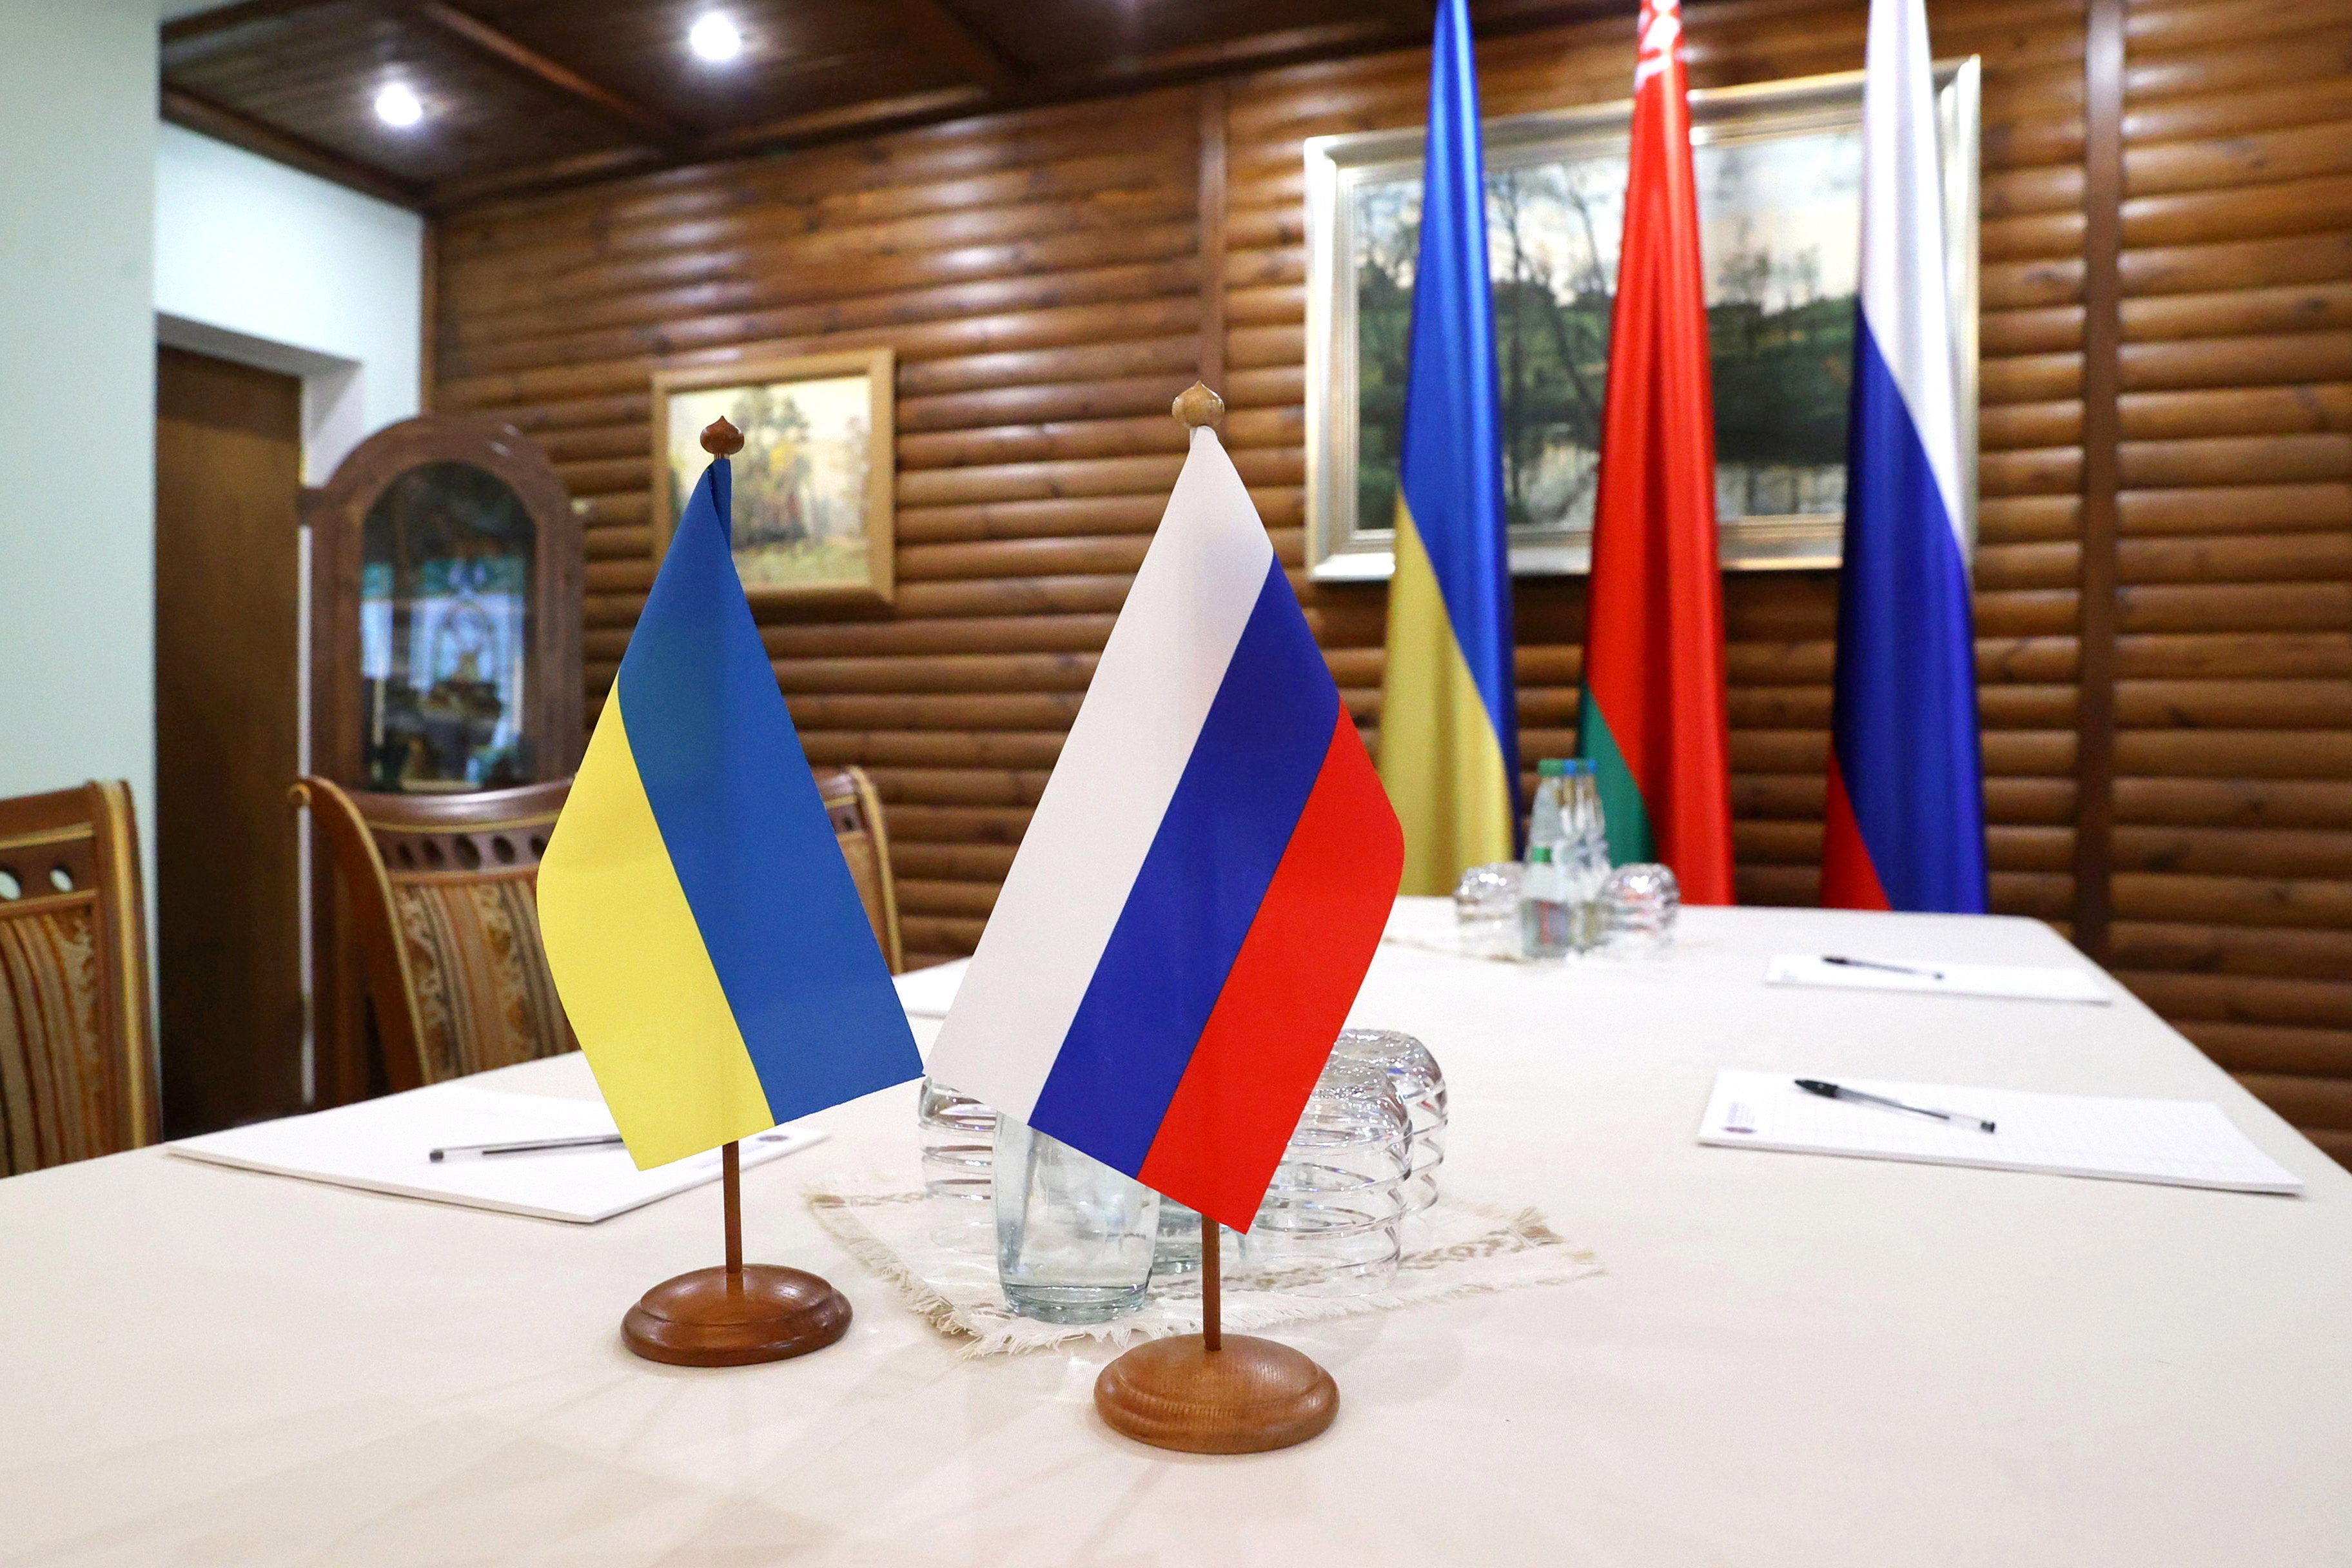 Oroszország és Ukrajna békeszerződés tervezete és Putyin beszéde - Blikk